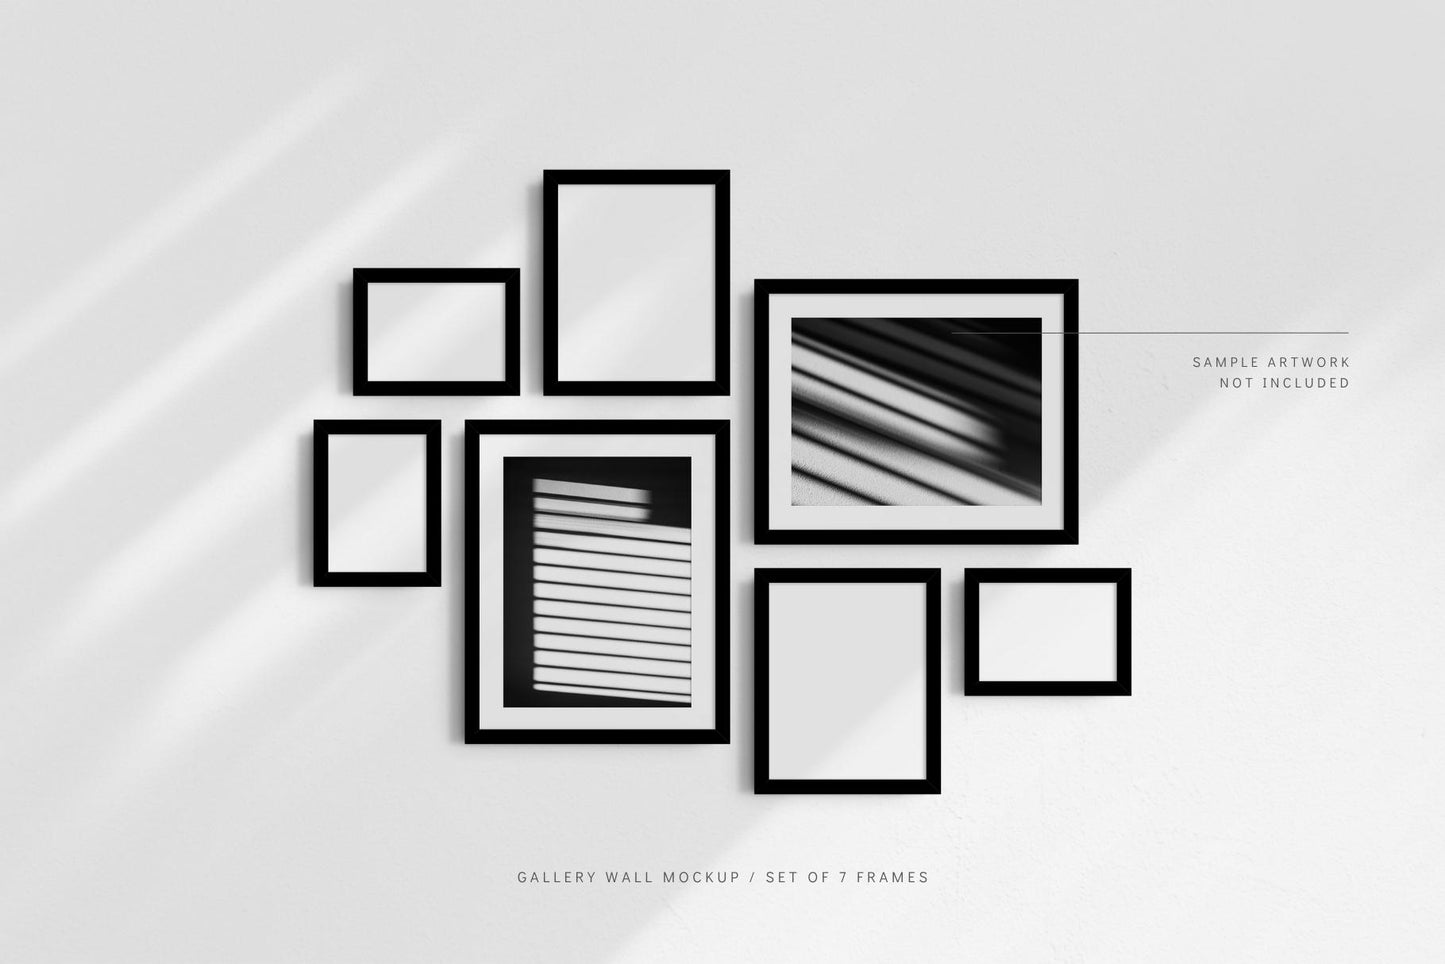 Gallery Wall Mockup | Set of 7 Frames | Frame Mockup | PSD | Black Frames